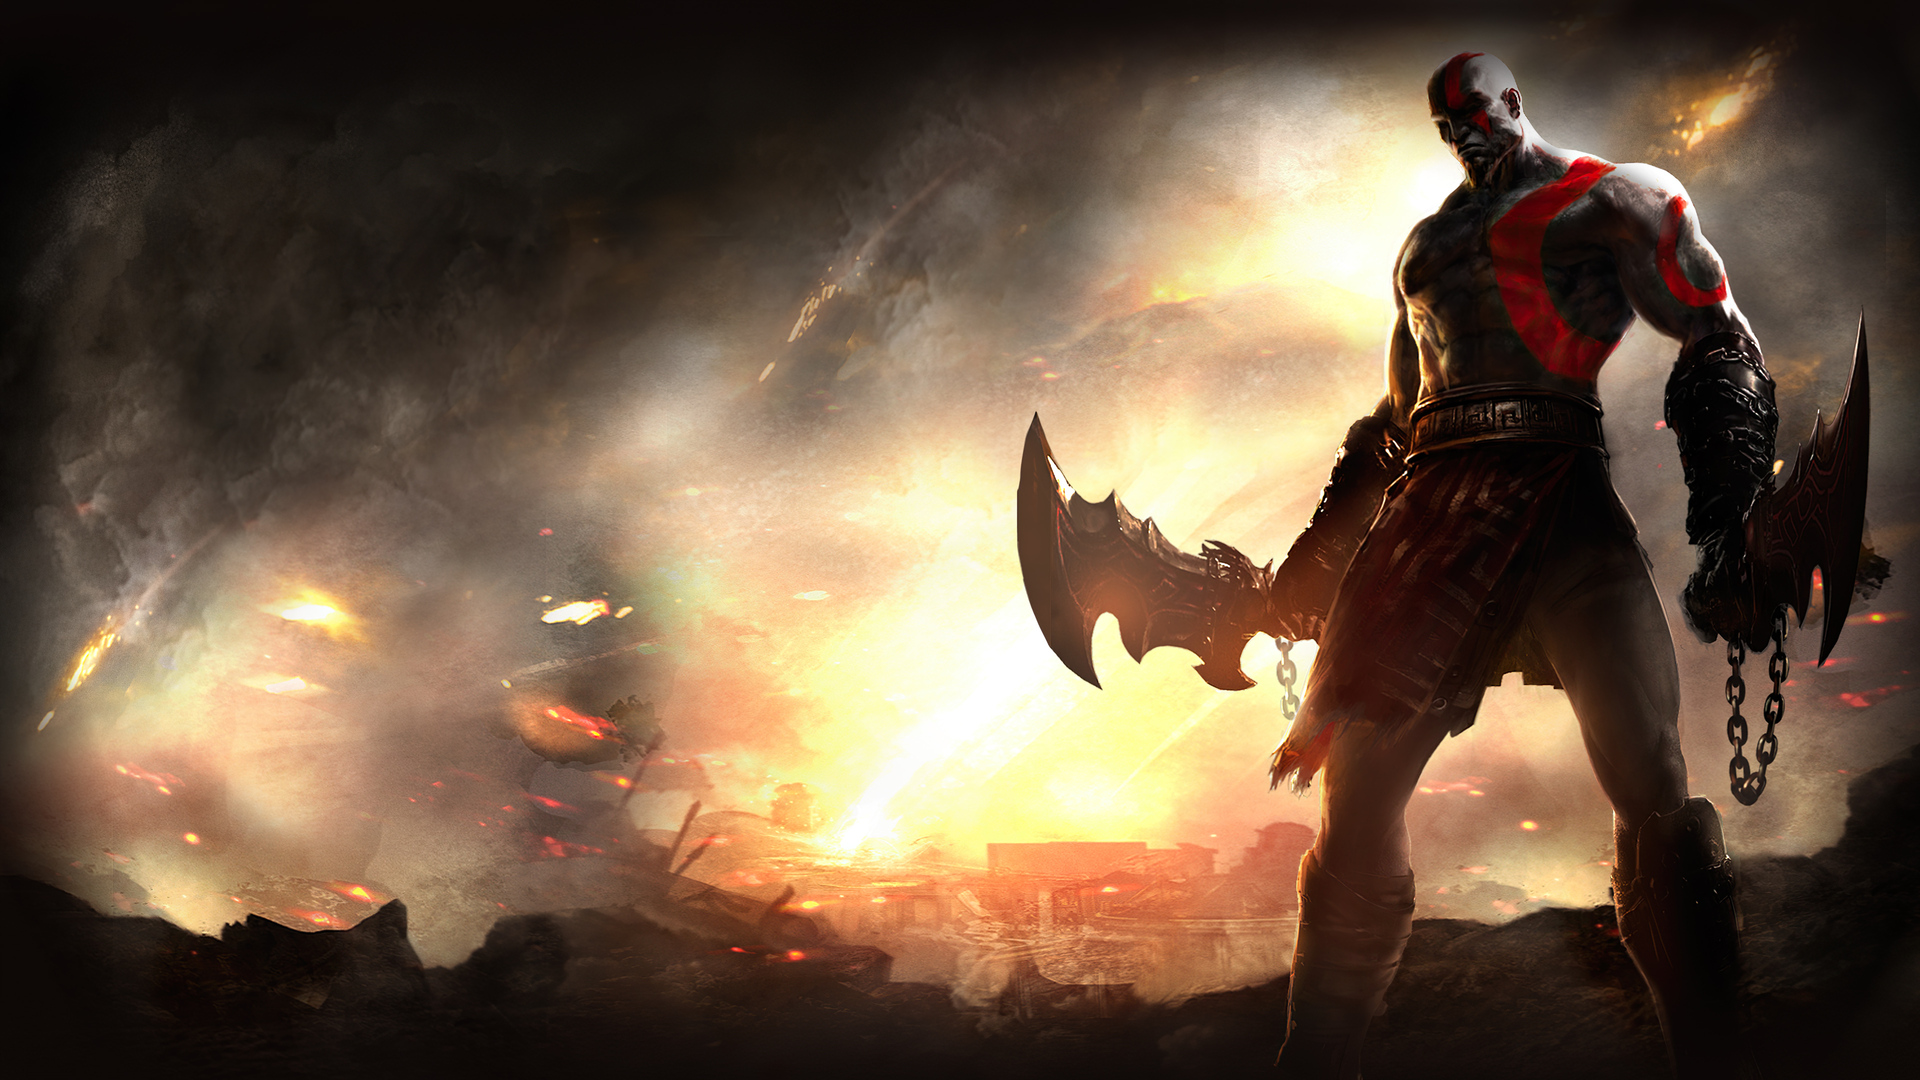 kratos-the-old-warrior-4k-cm.jpg